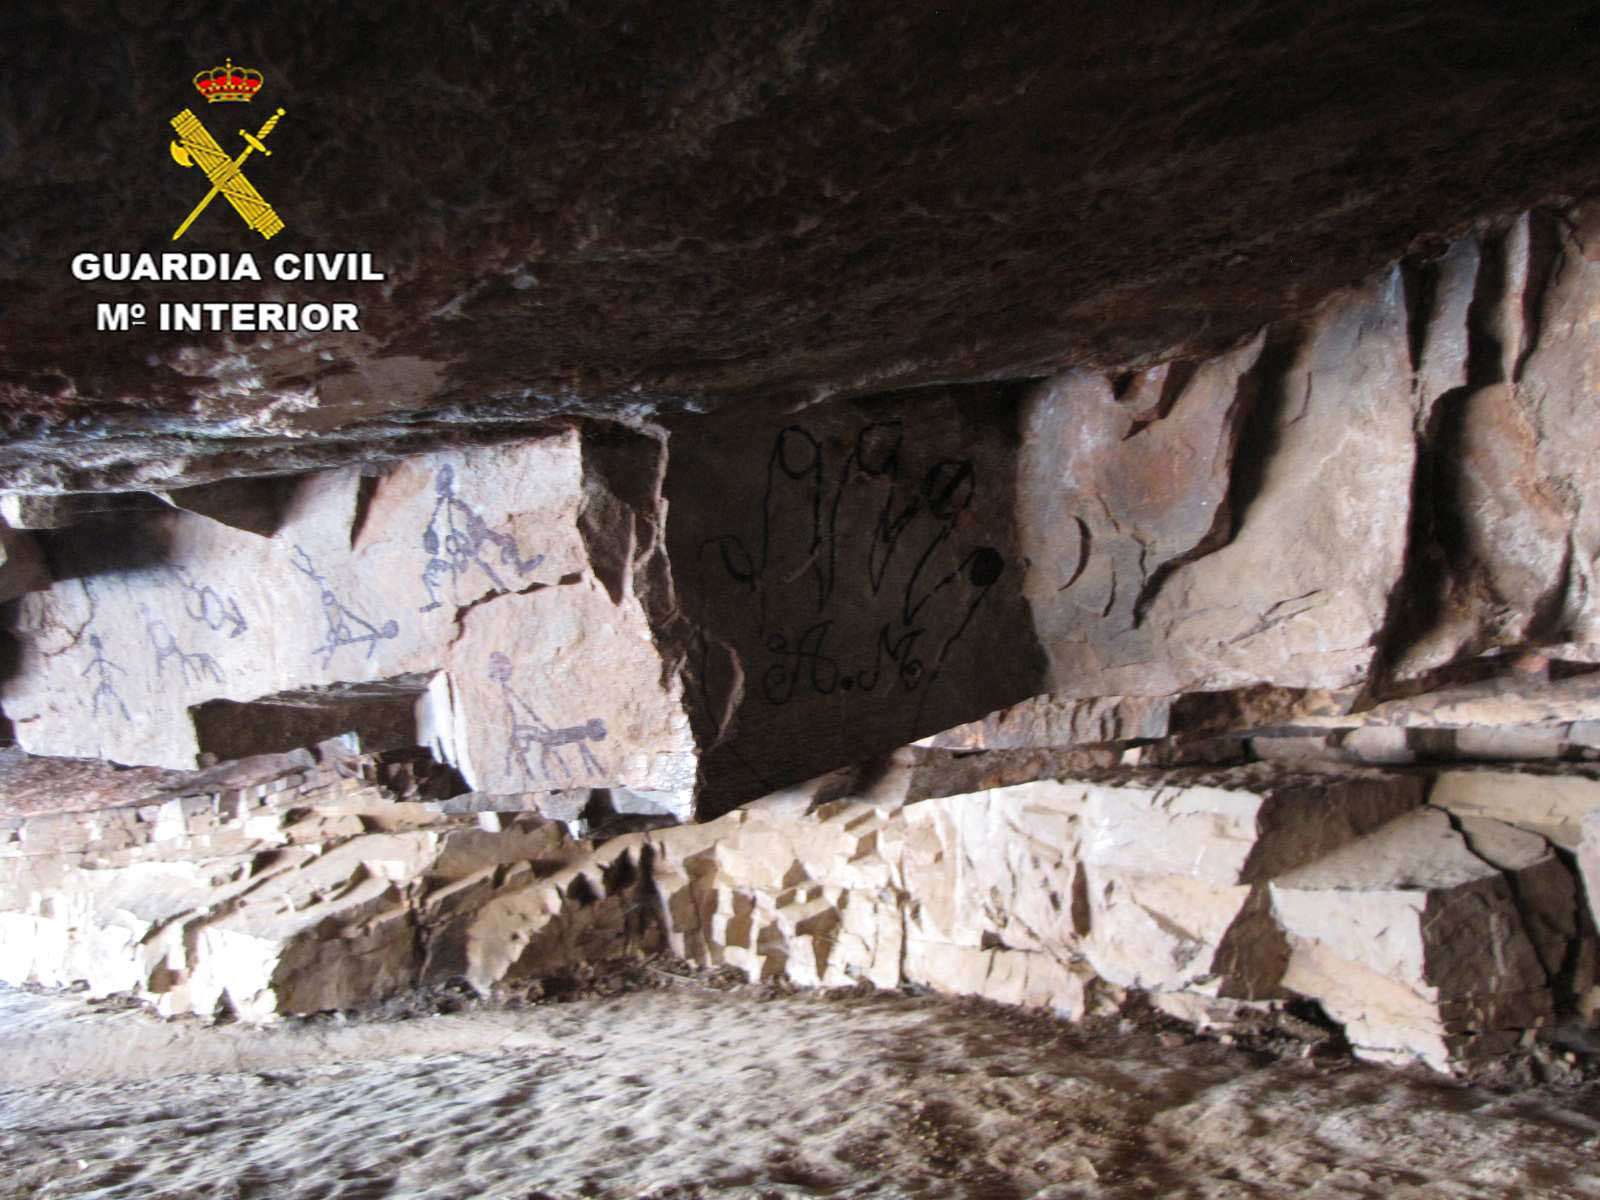 La Guardia Civil esclarece la autoría de unas pintadas en la Cueva de la Rendija